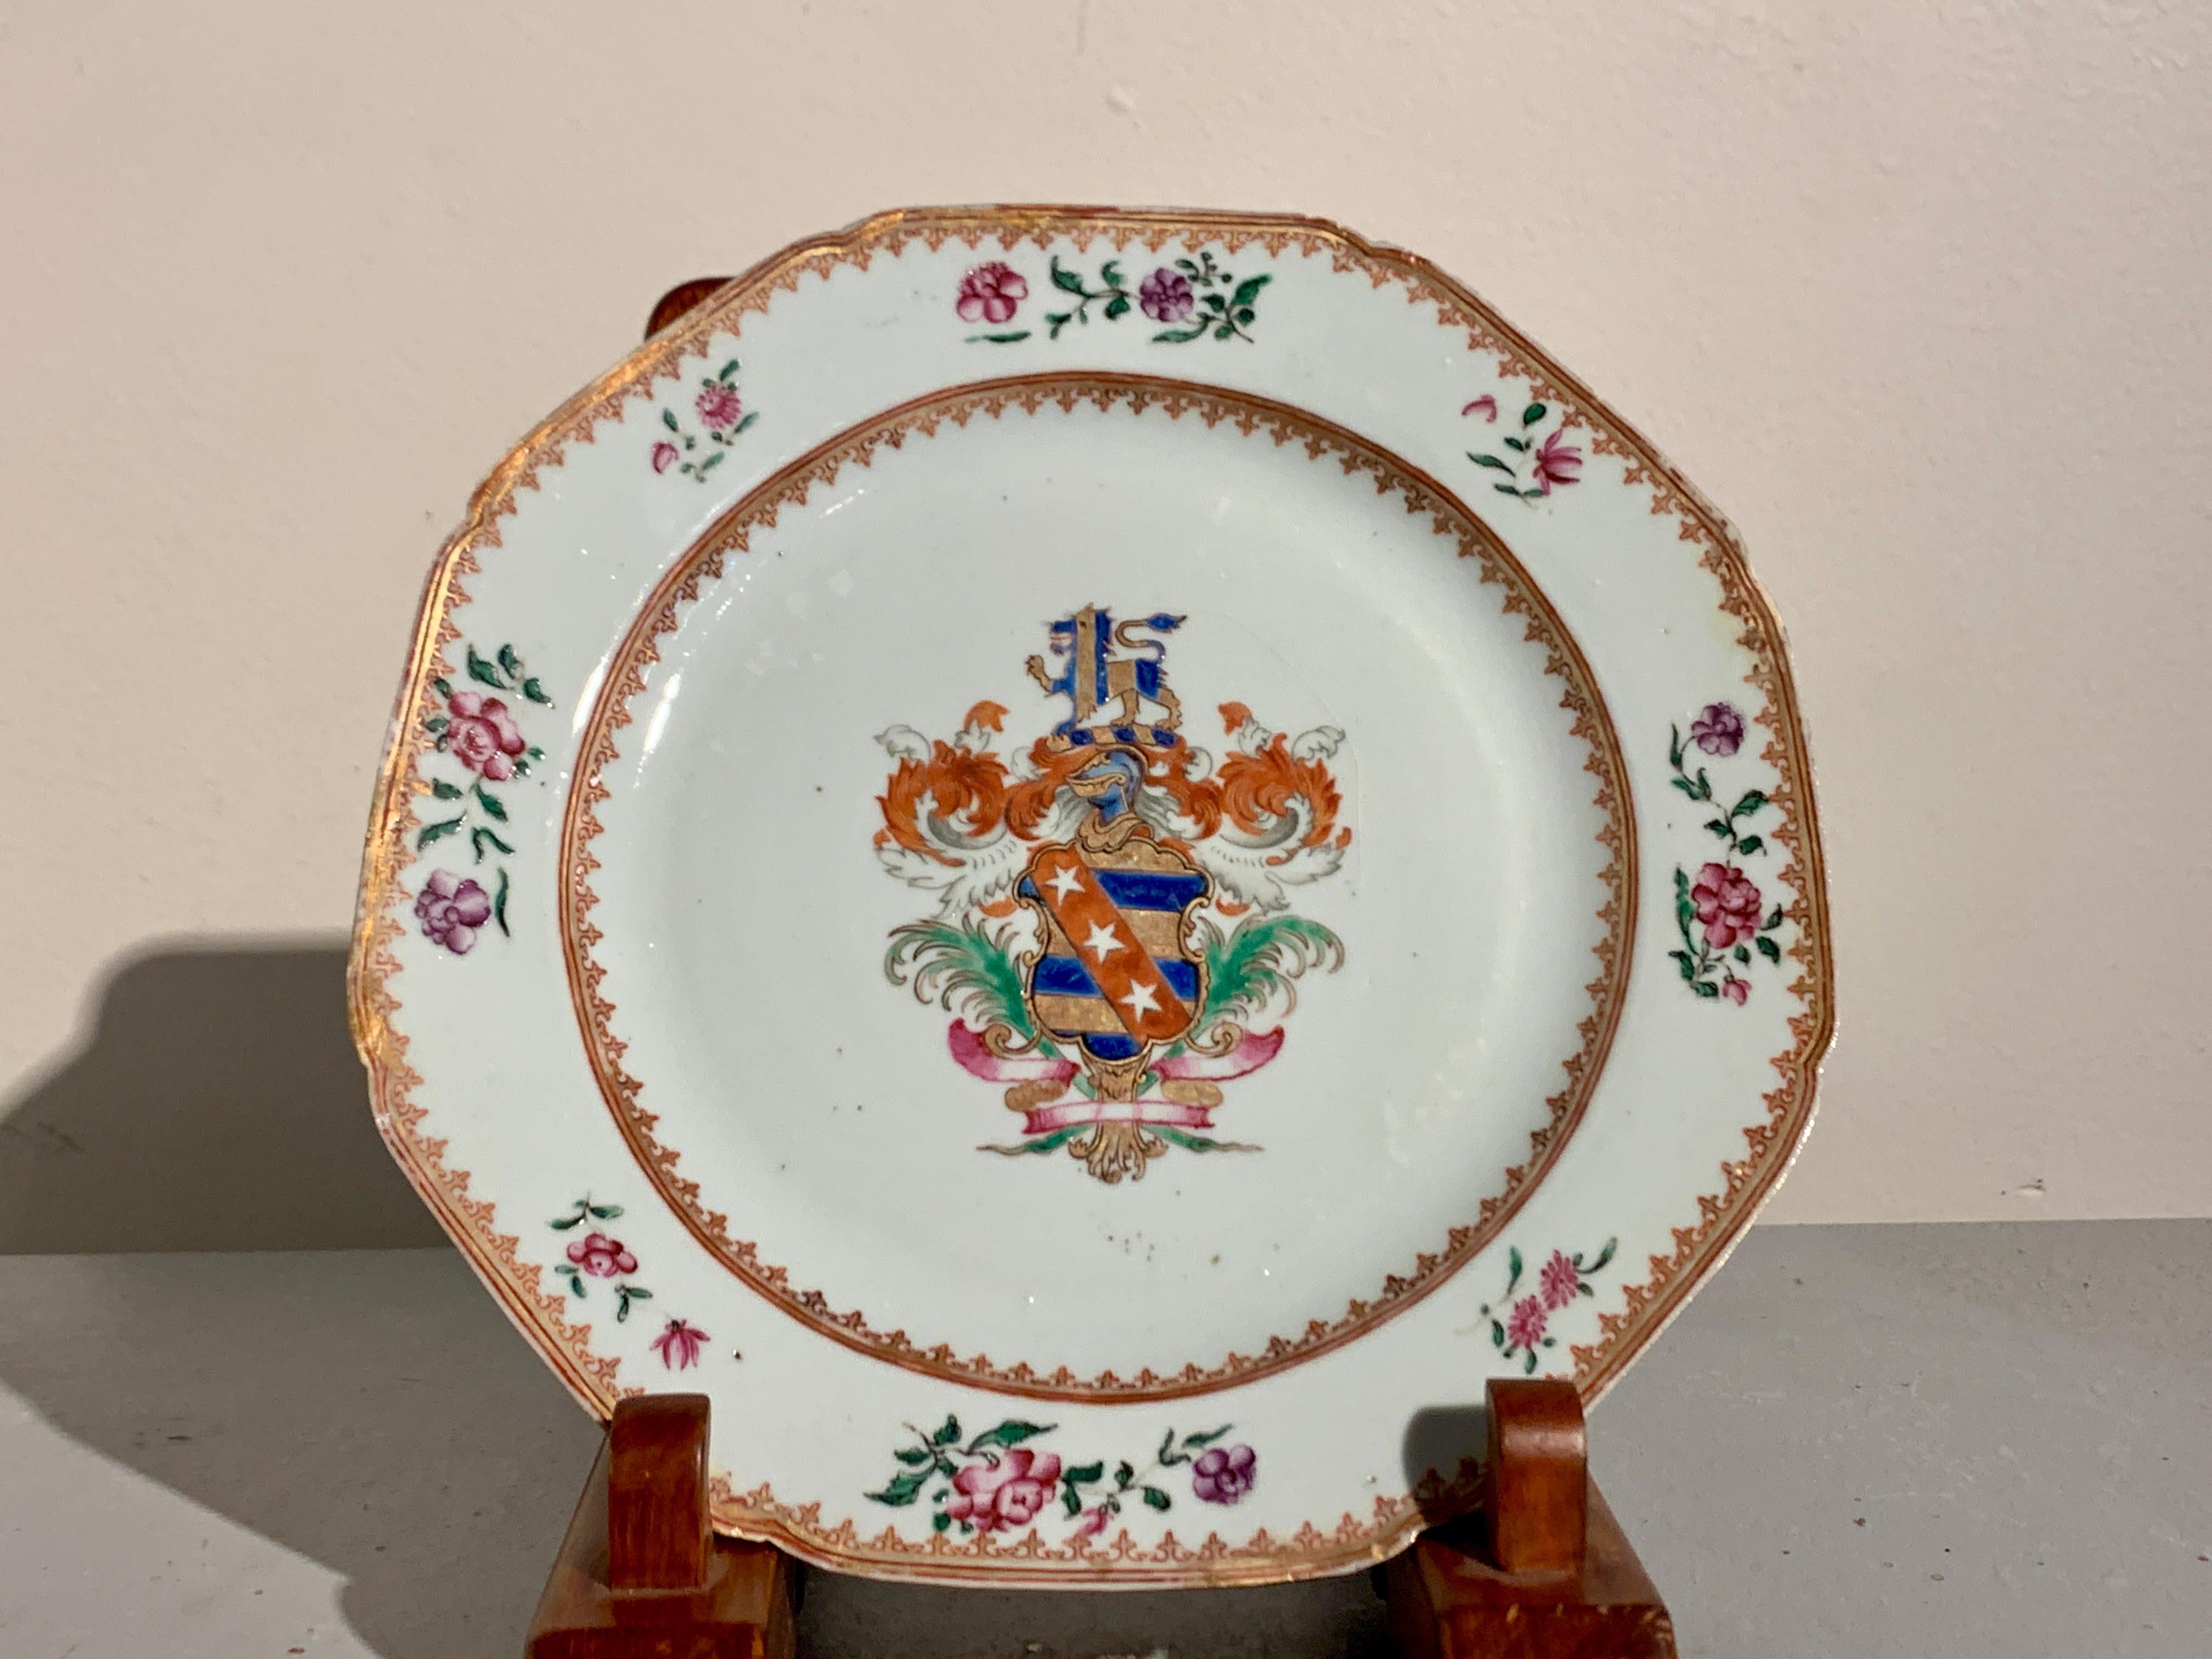 Une belle paire d'assiettes armoriées en porcelaine émaillée famille rose d'exportation chinoise, milieu du 18e siècle, Chine.

Les assiettes sont de forme octogonale inhabituelle avec des coins festonnés. Le centre de chaque plat est orné d'un